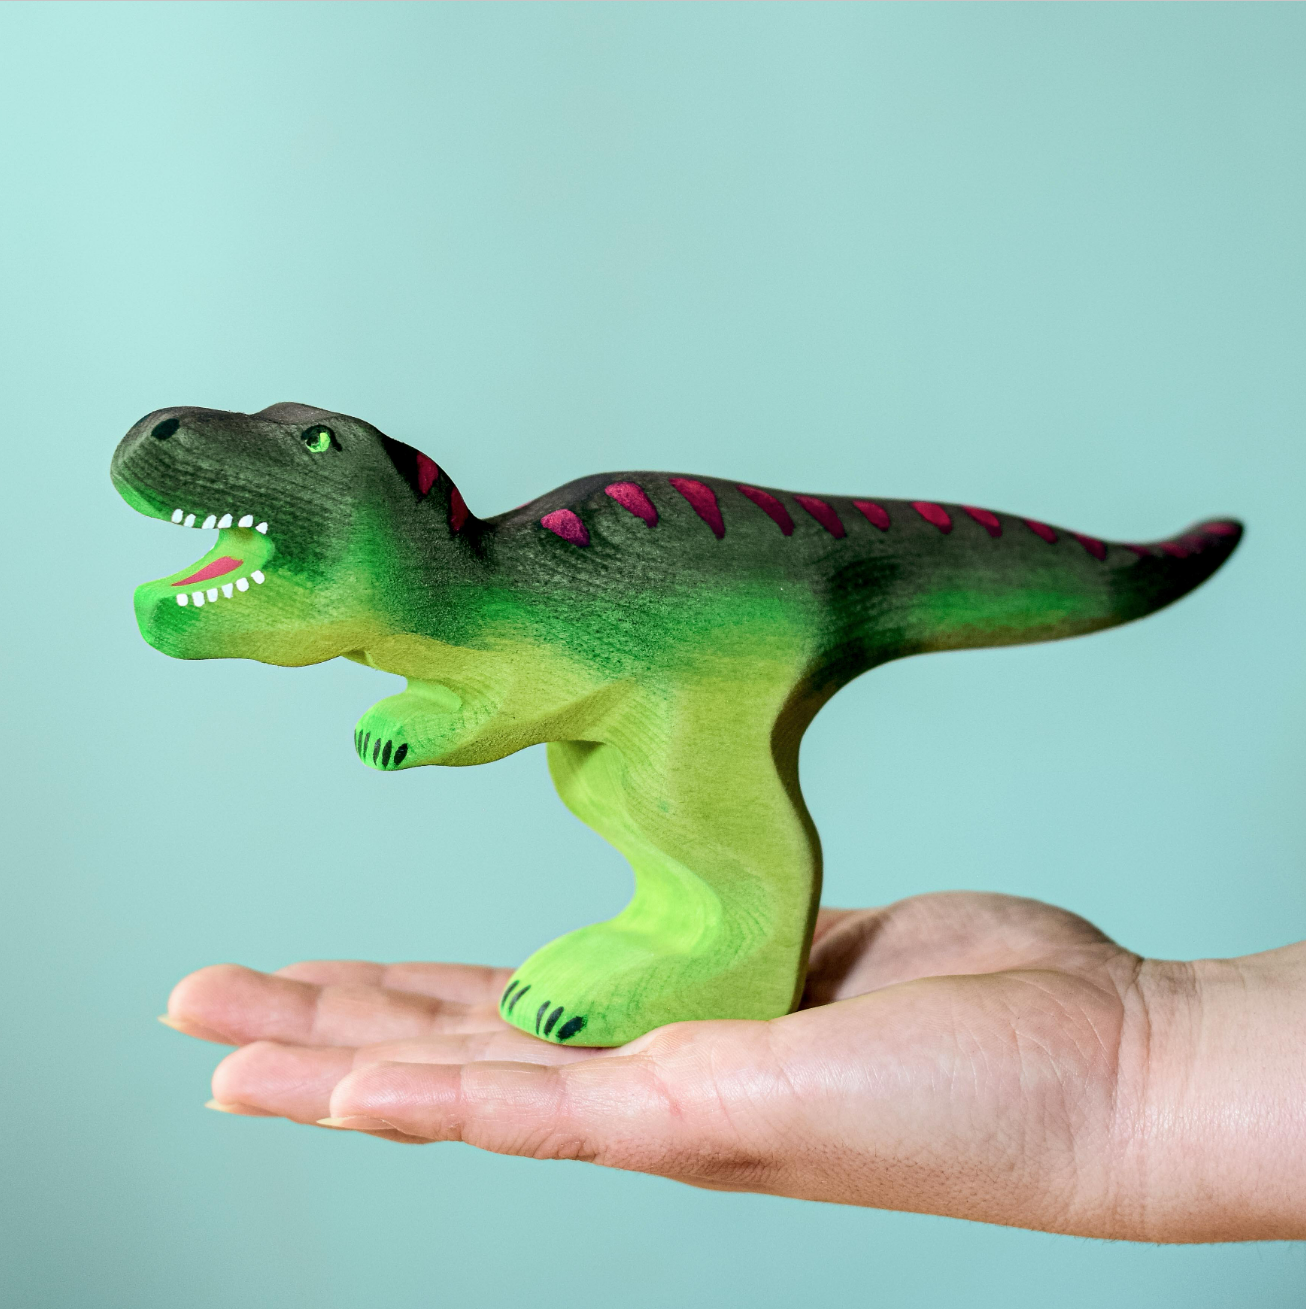 Bumbu Toys Wooden T-Rex Dinosaur